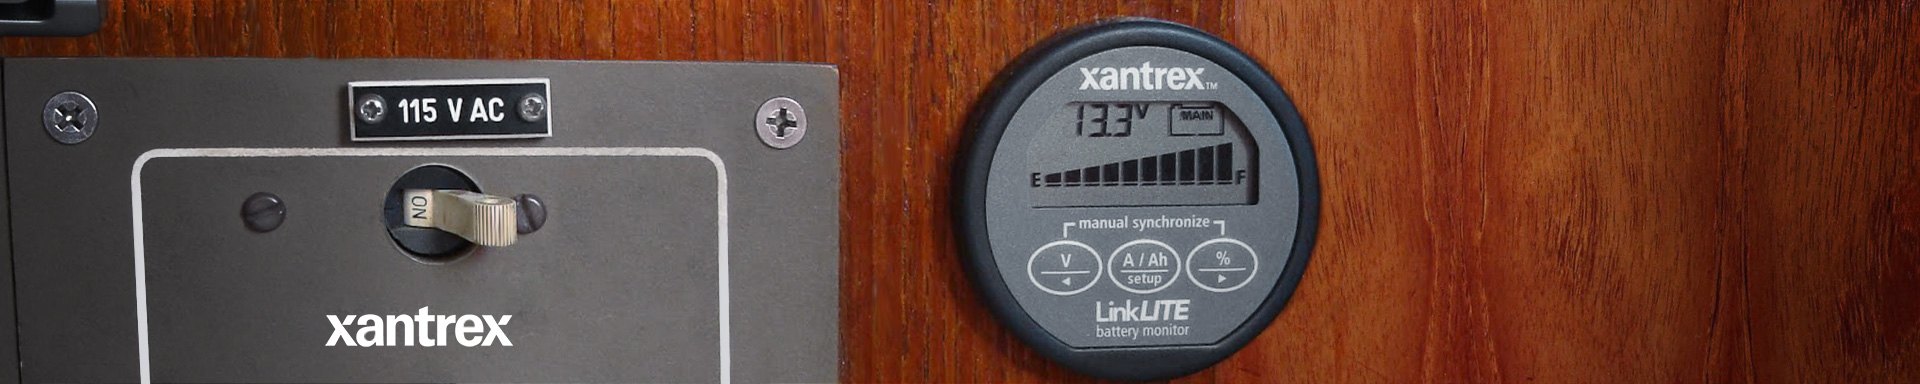 Xantrex Batteries & Power